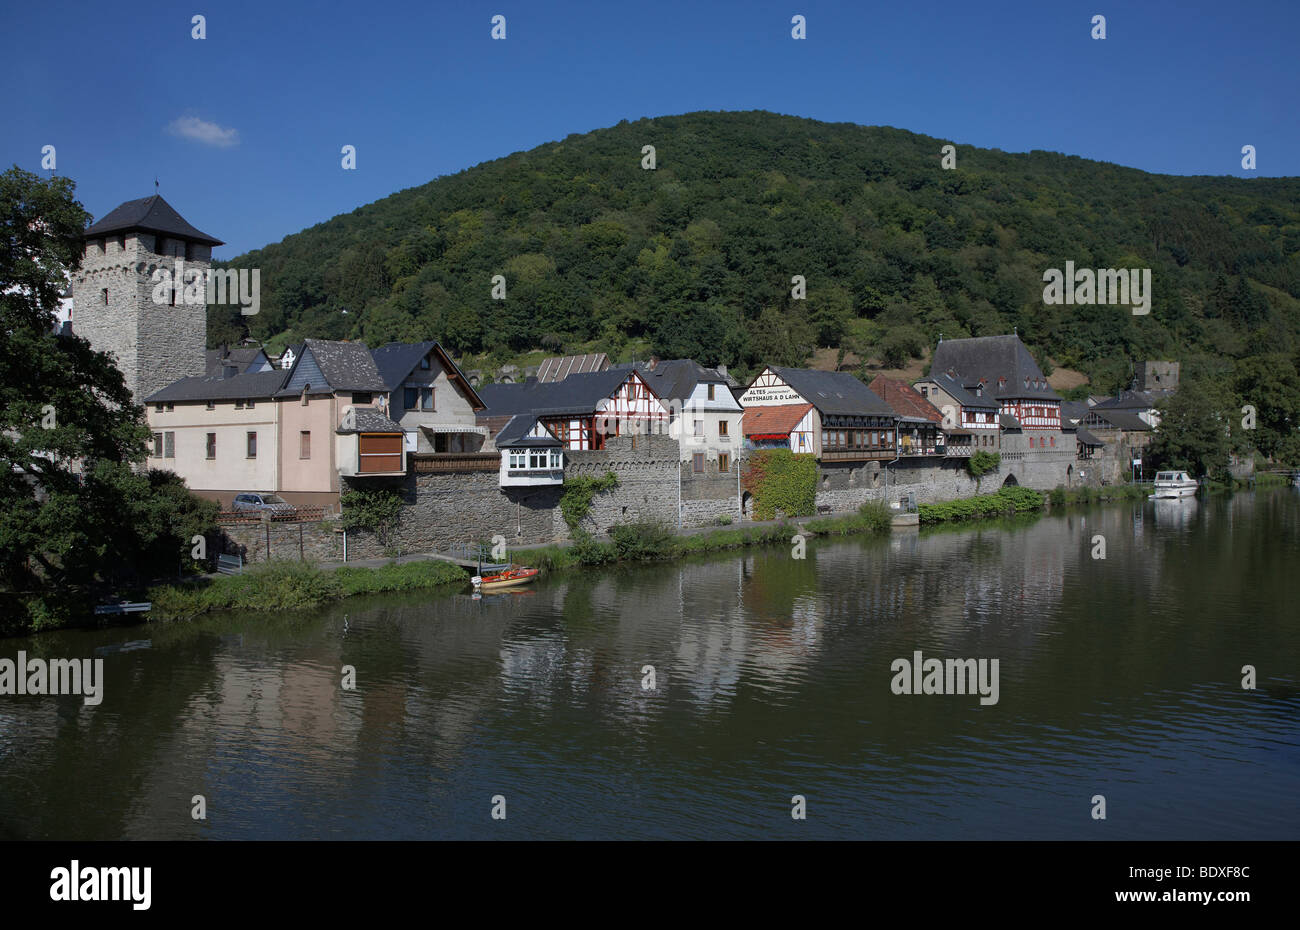 Dausenau sobre el río Lahn, Renania-Palatinado, Alemania, Europa Foto de stock